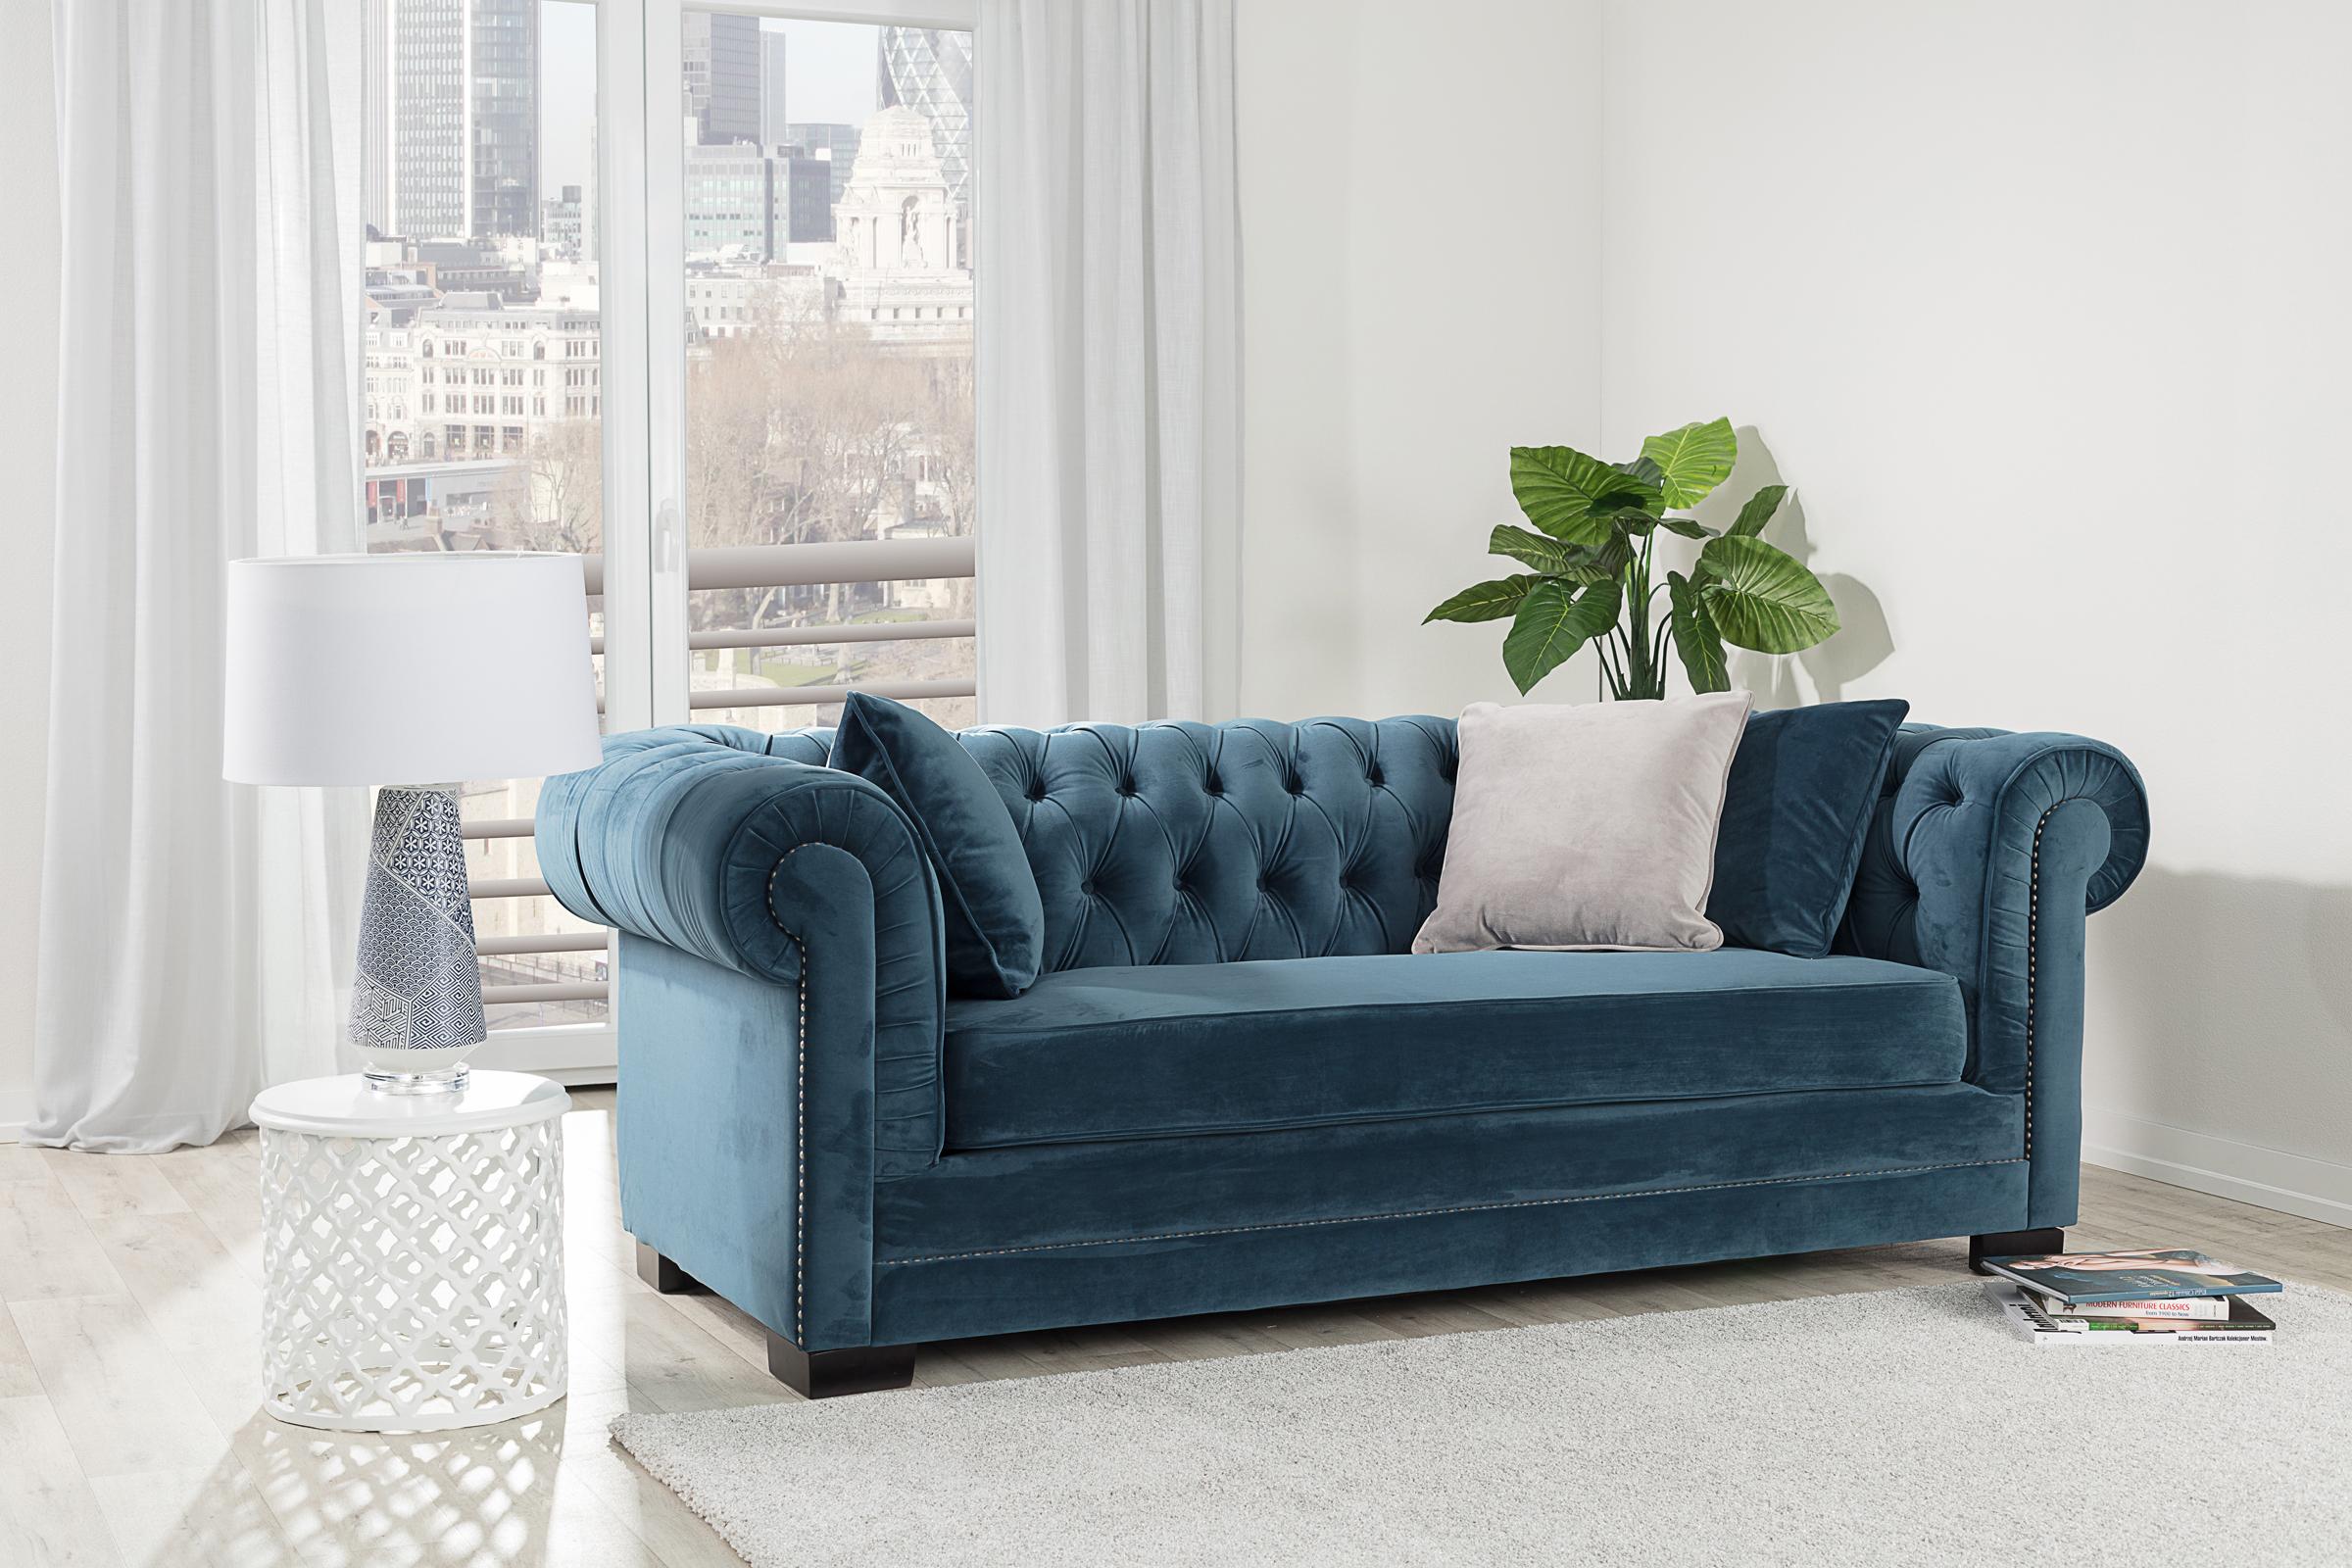 Ein #Chesterfield-#Sofa wirkt in jedem Raum. Die samtene, dunkelblaue Polsterung wirkt edel und elegant.